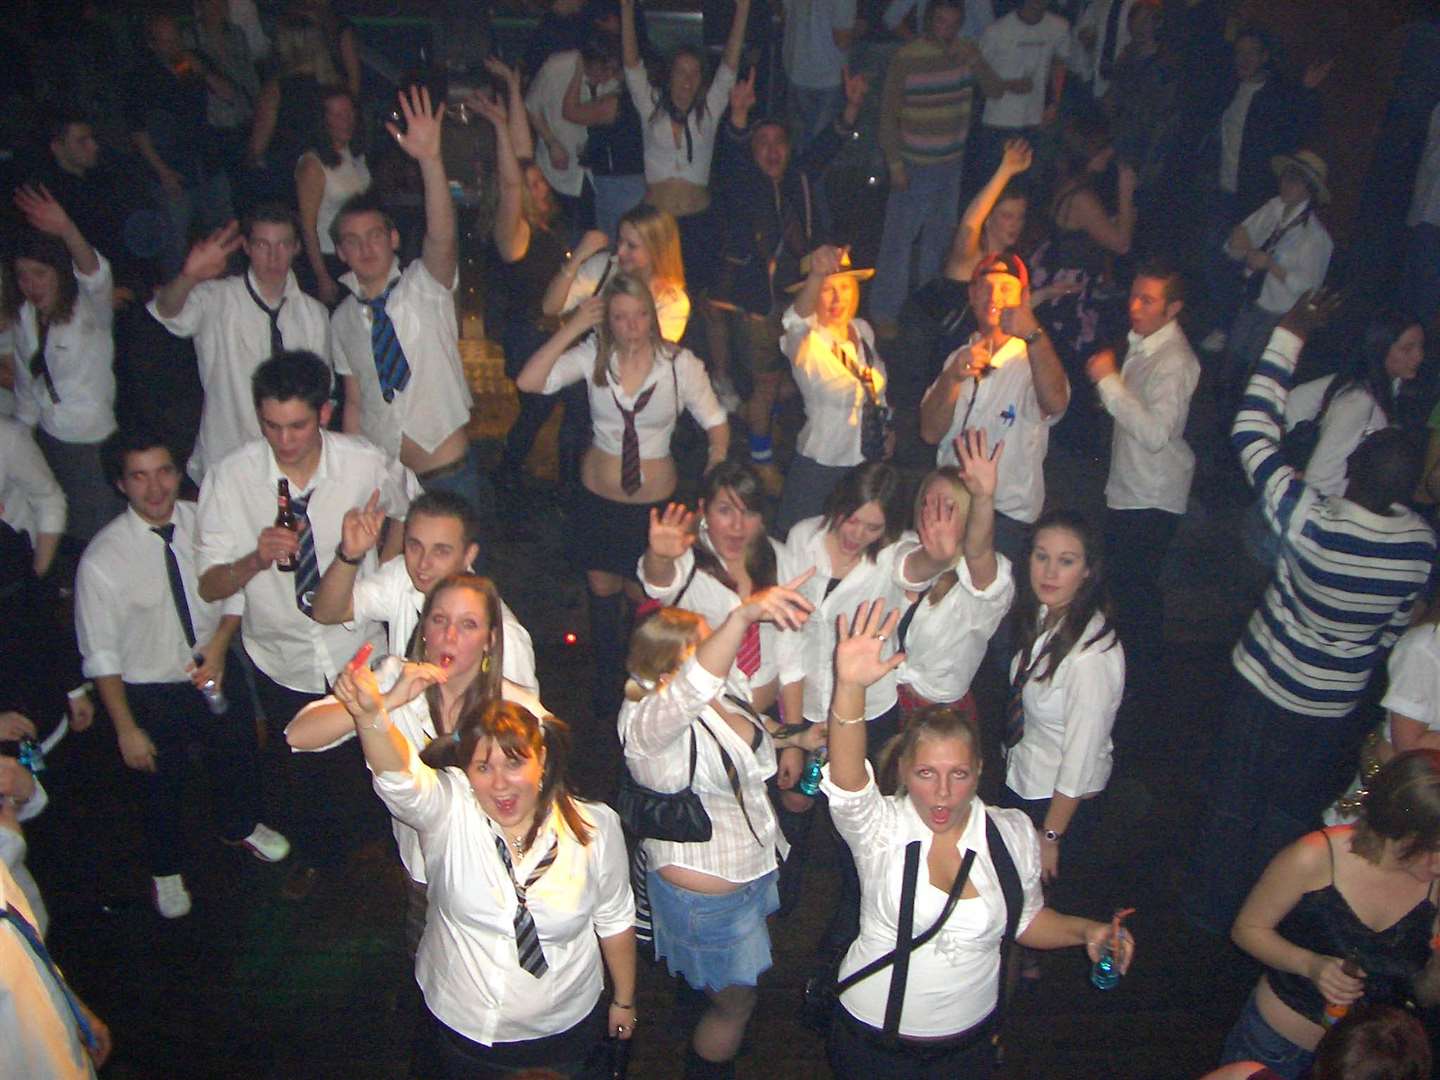 School disco night at Escape in Margate in 2005